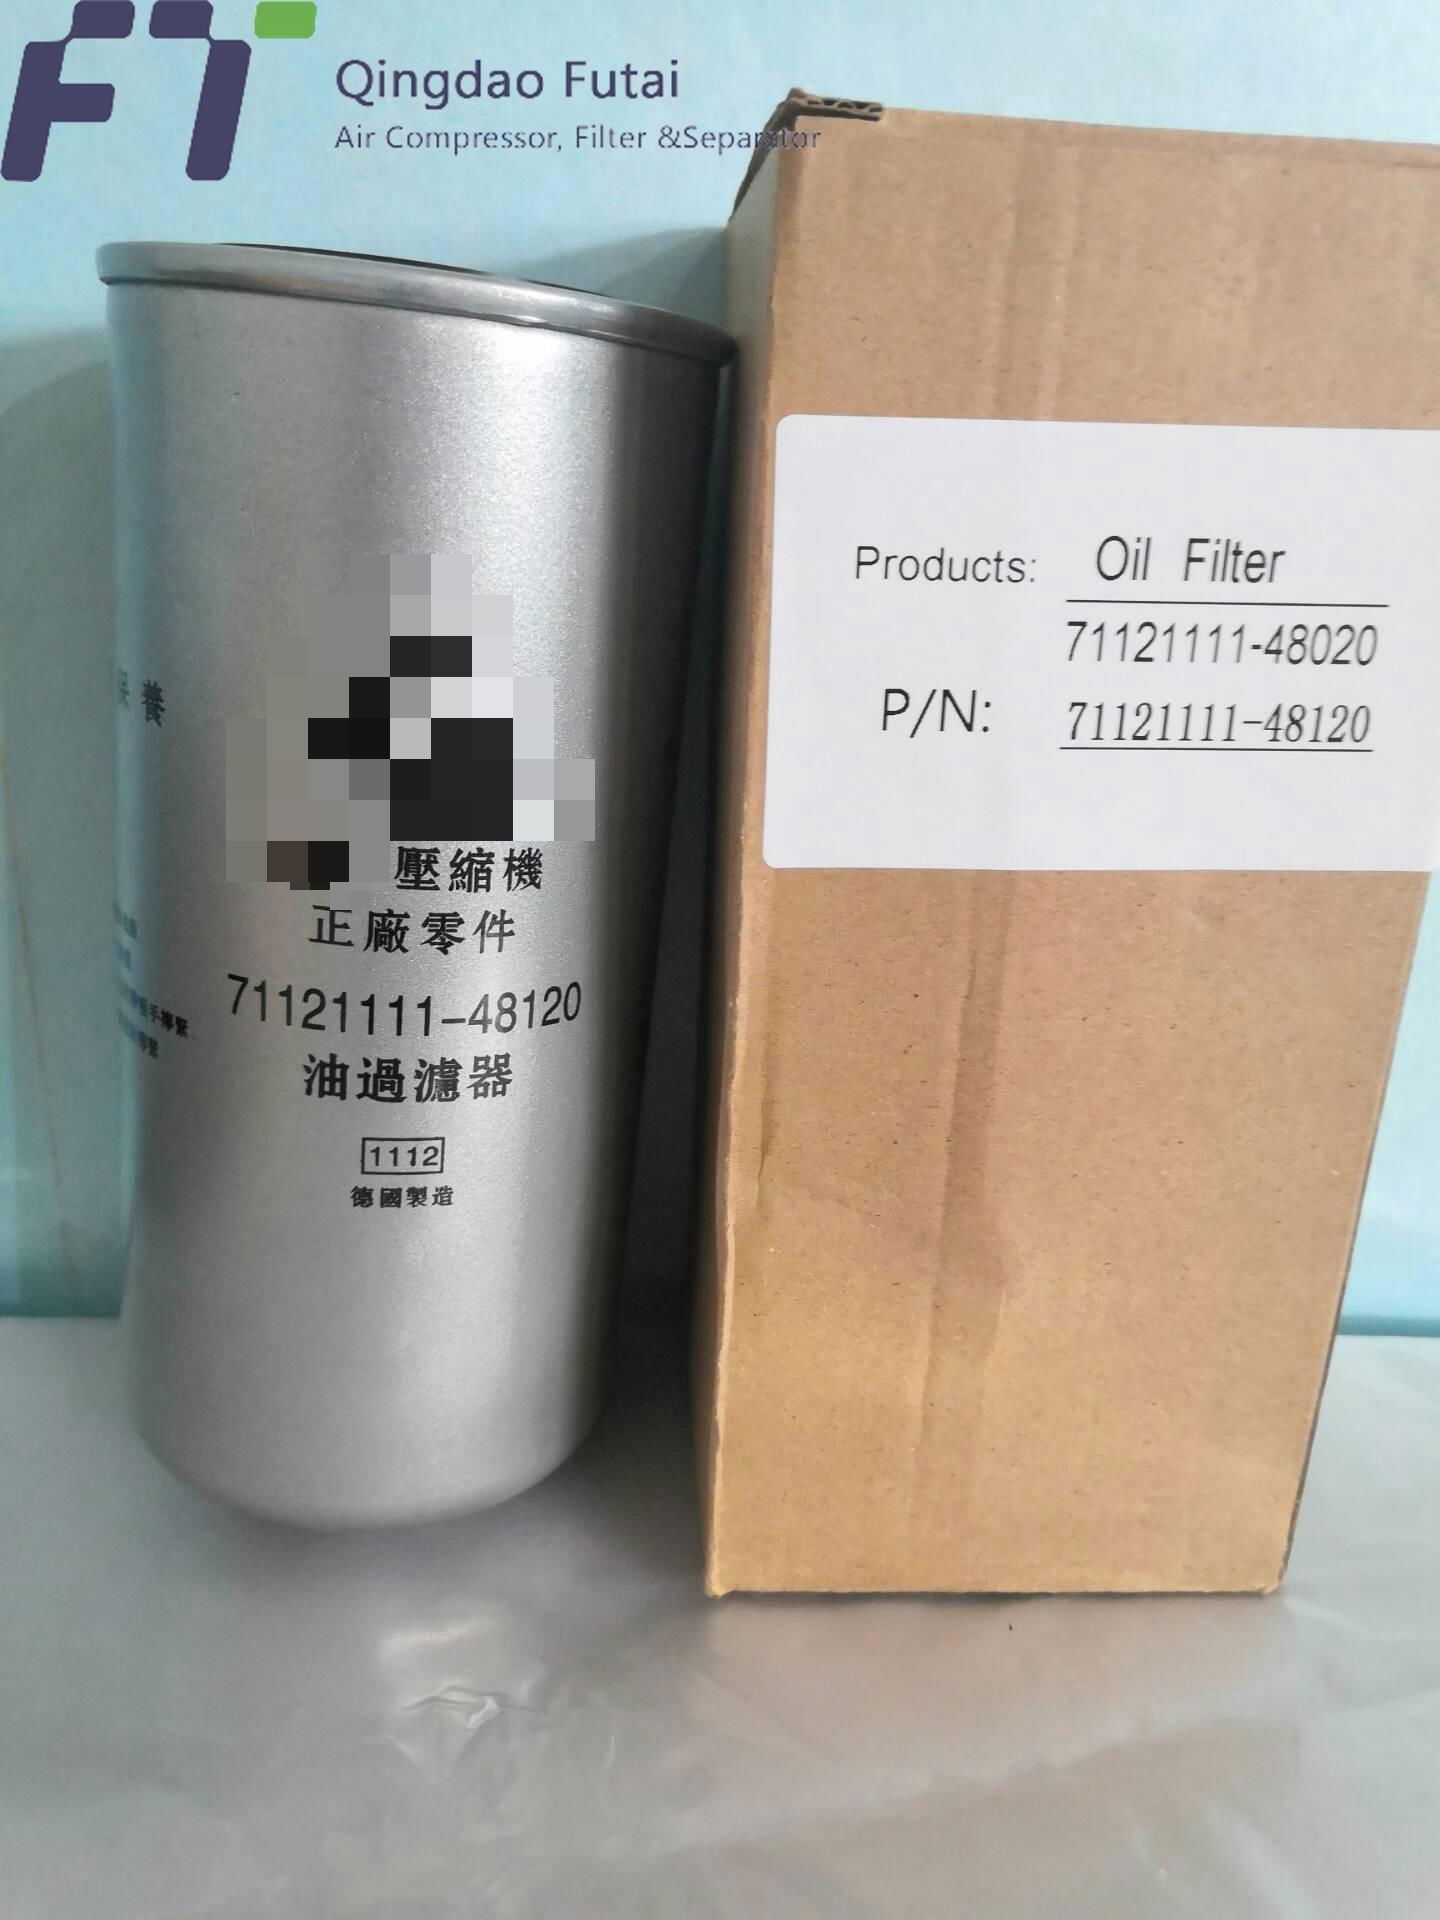 Fusheng Oil Filter 71121111-48120 Air Compressor Parts 2